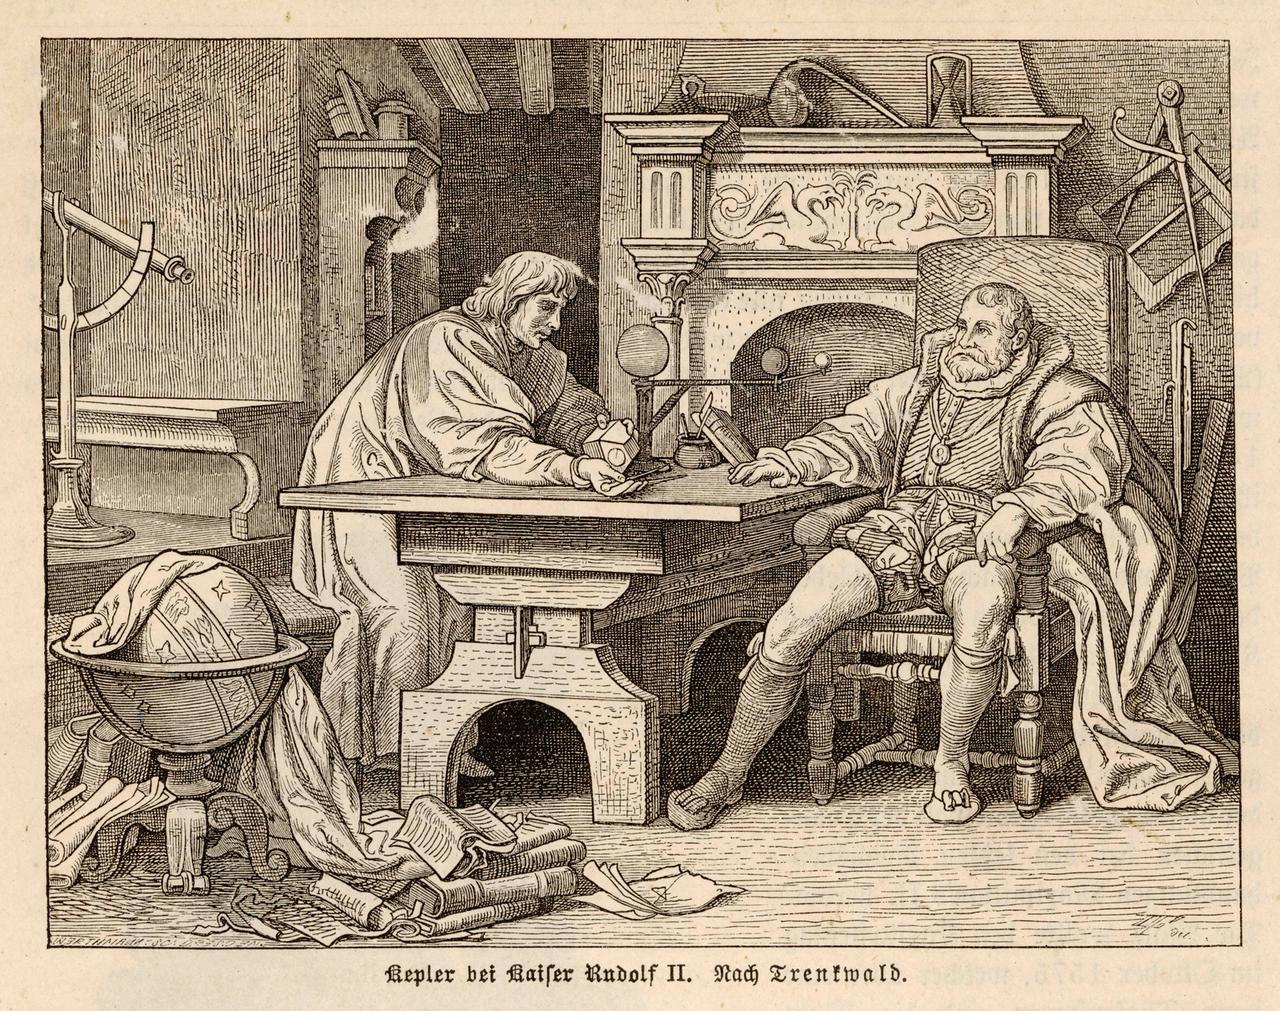 Industria della stampa: Johannes Kepler con l'imperatore Rodolfo II.